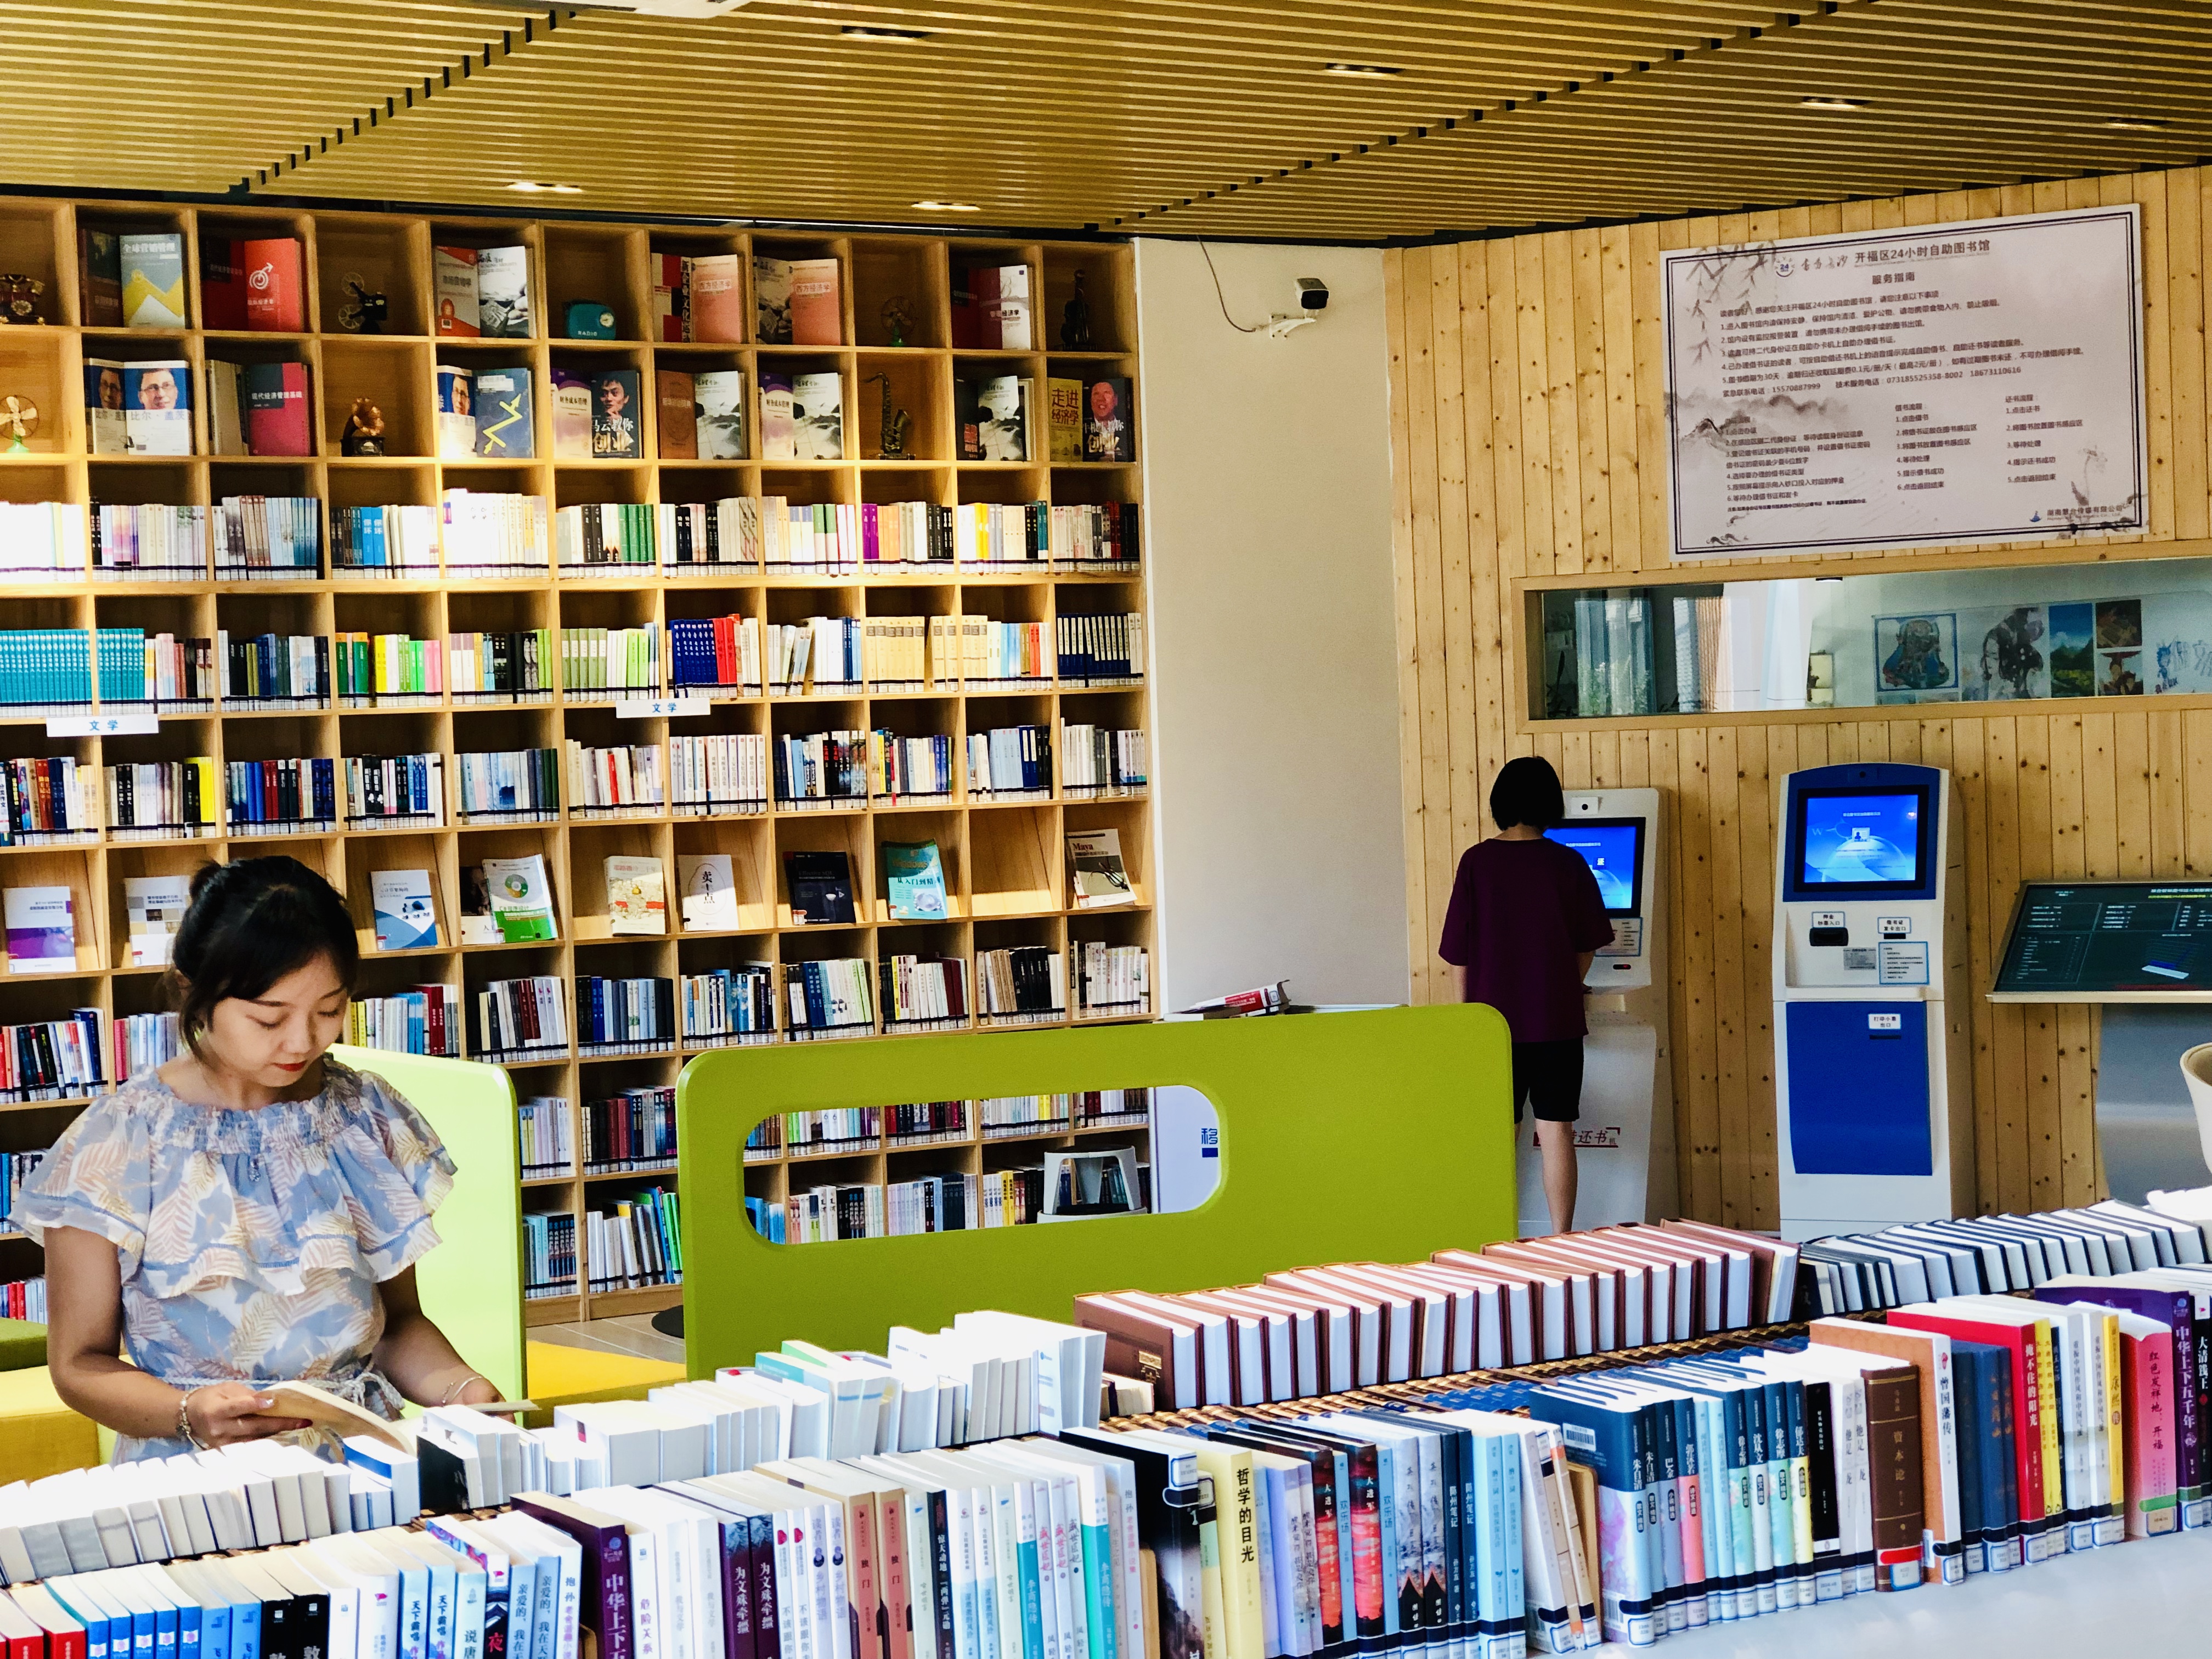 位于马栏山文创园内的自助图书馆面积最大、设施最好，吸引了众多读者来看书、办活动，成为网红打卡地。  全媒体记者 李卓 摄